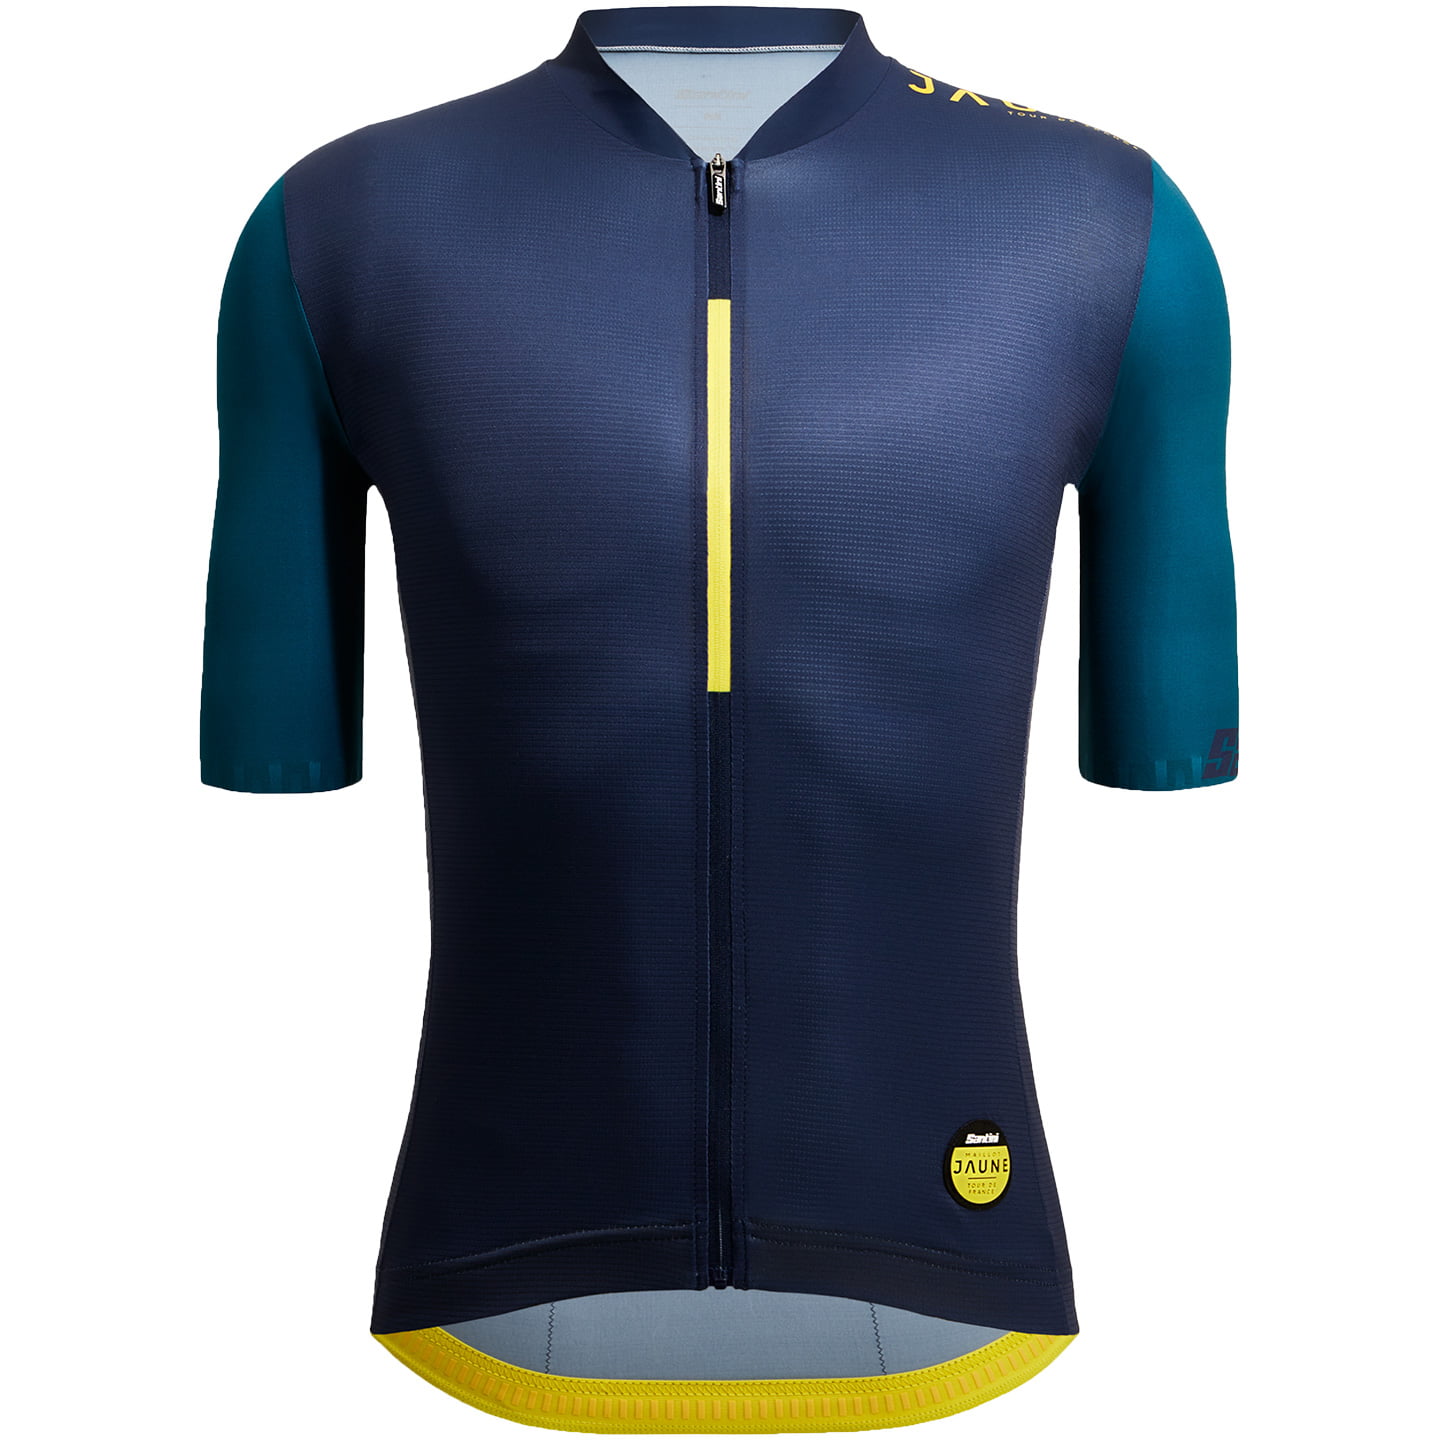 TOUR DE FRANCE Le Maillot Jaune Allez 2023 Short Sleeve Jersey, for men, size XL, Bike Jersey, Cycle gear